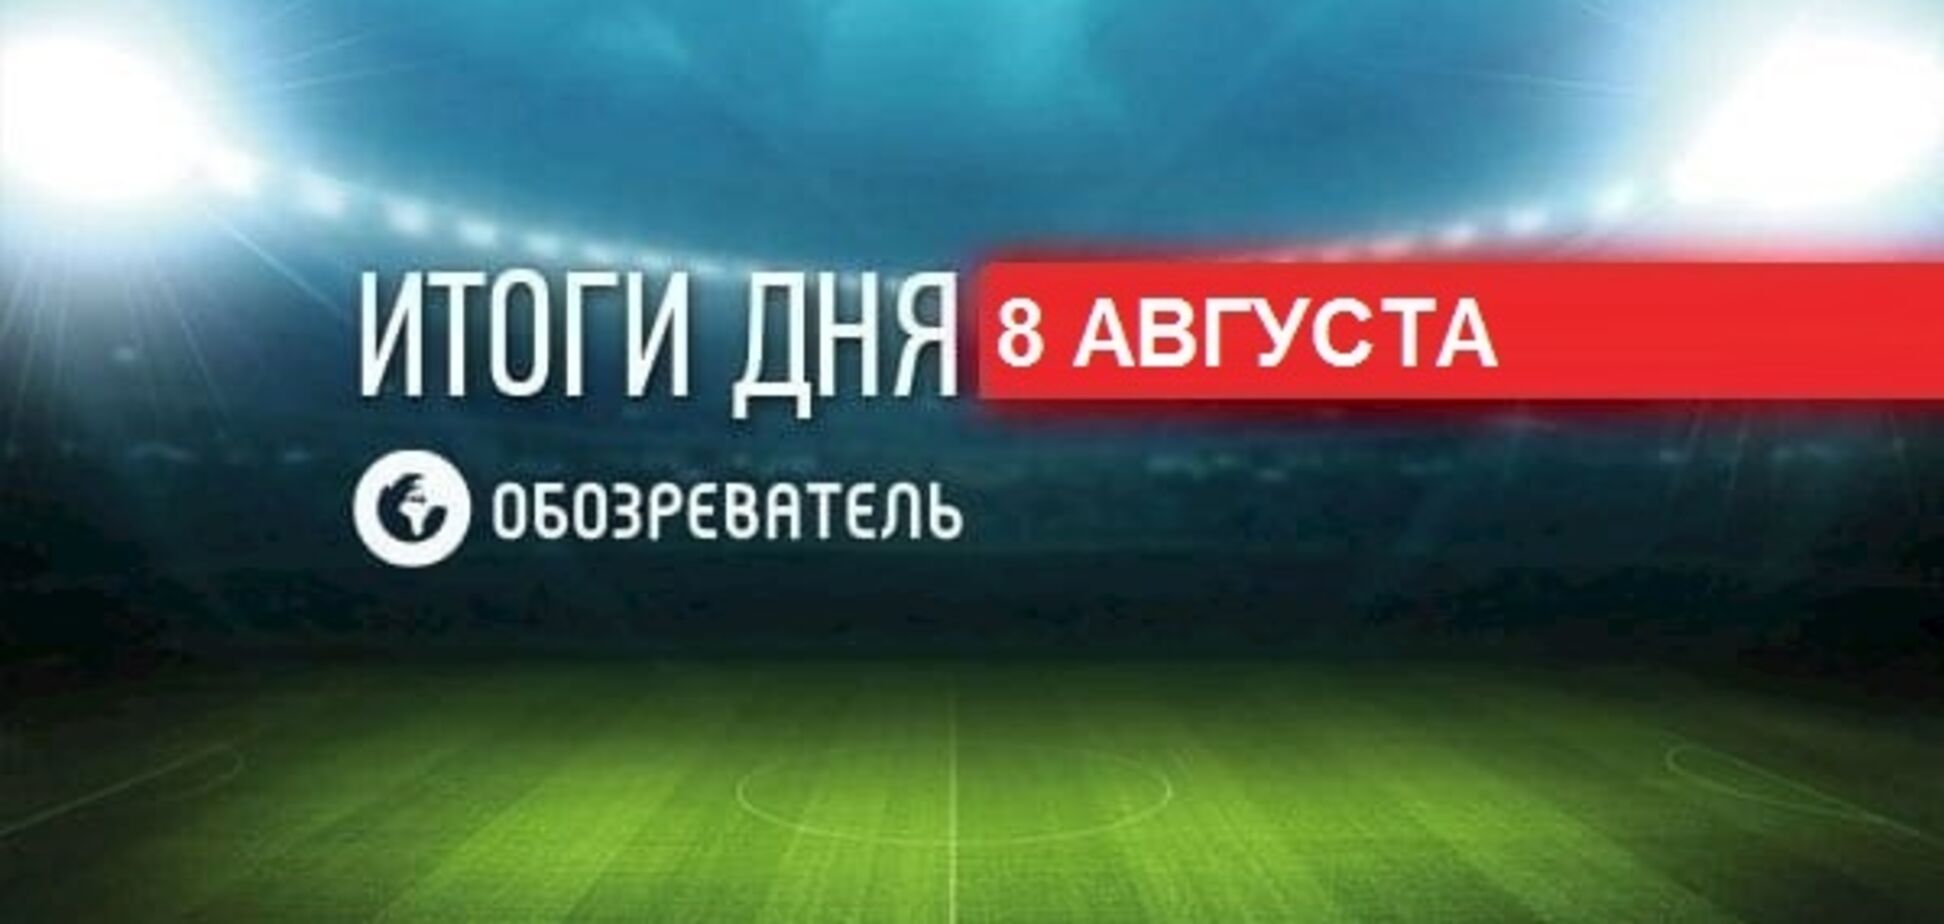 Из-за россиян возник скандал на матче Лиги чемпионов: спортивные итоги 8 августа